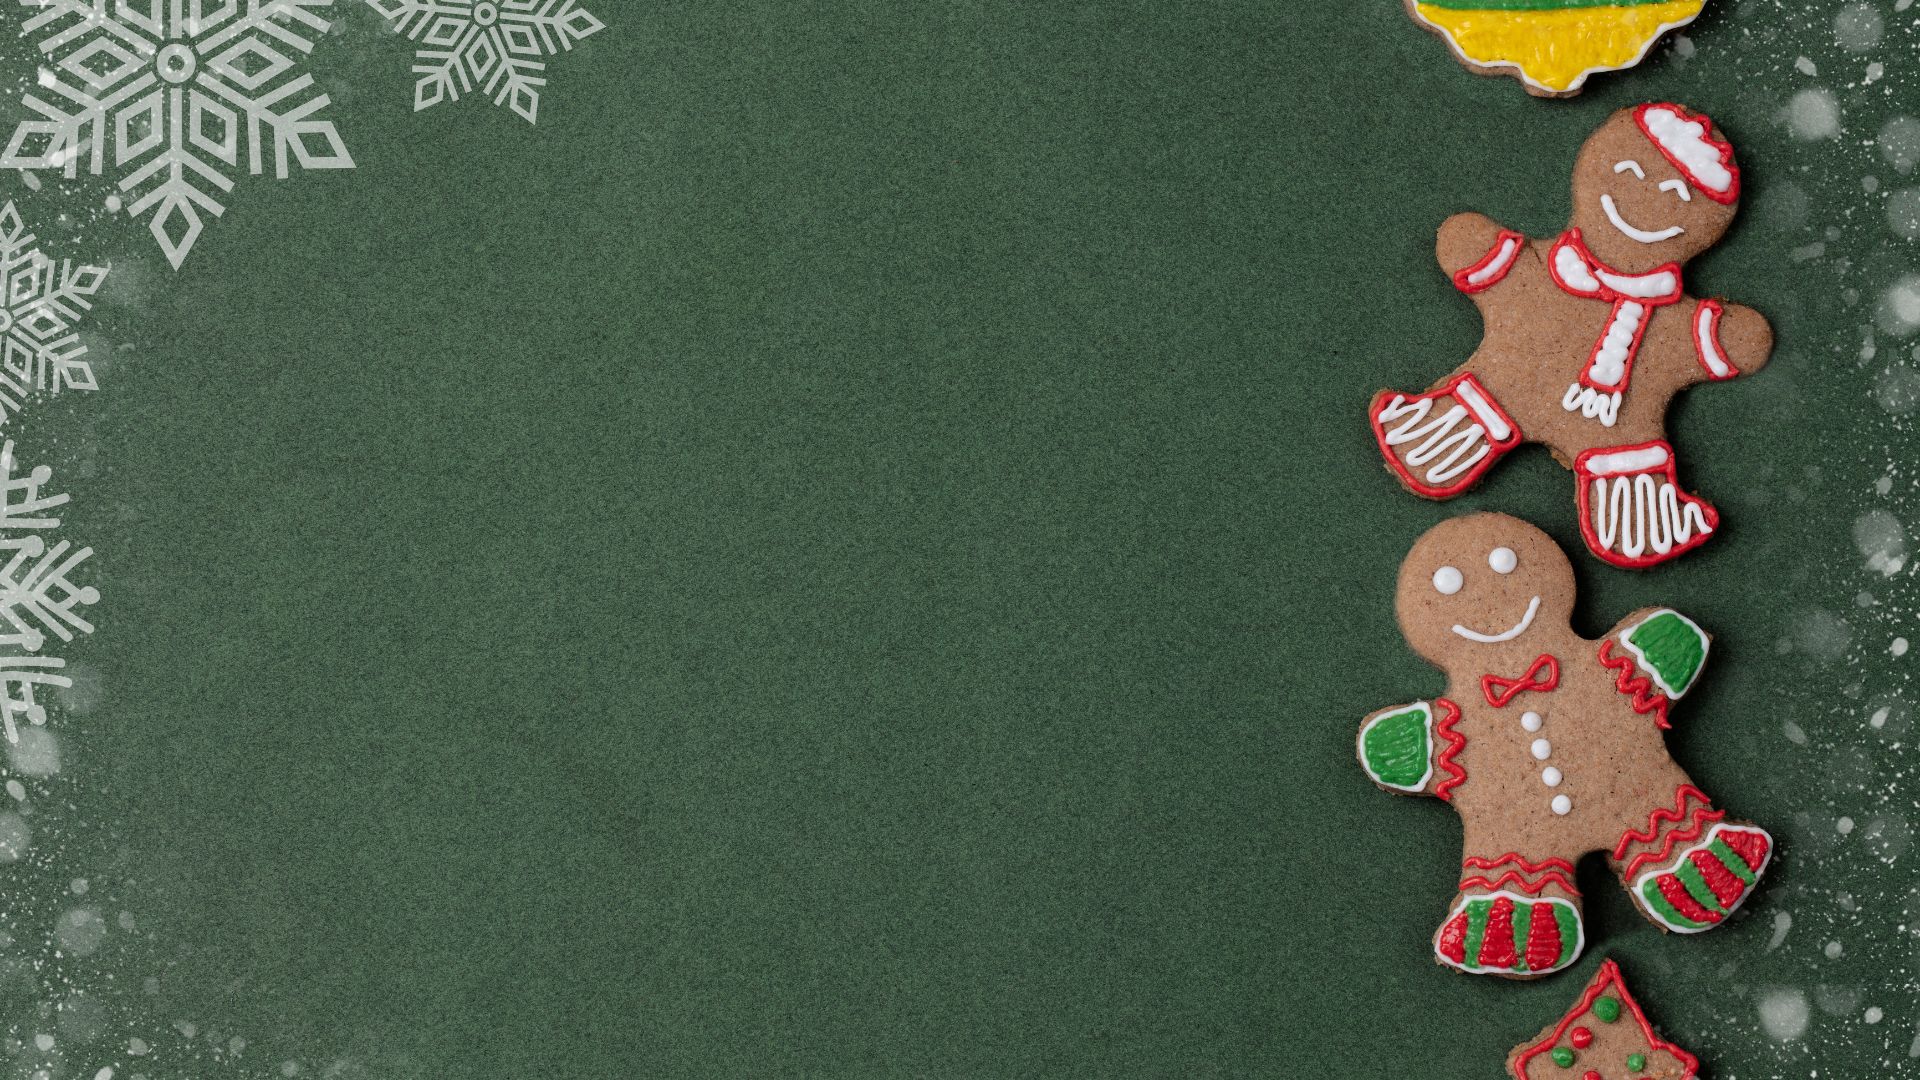 Imagem de fundo verde. Do lado direito da tela, bonecos natalinos comestíveis.